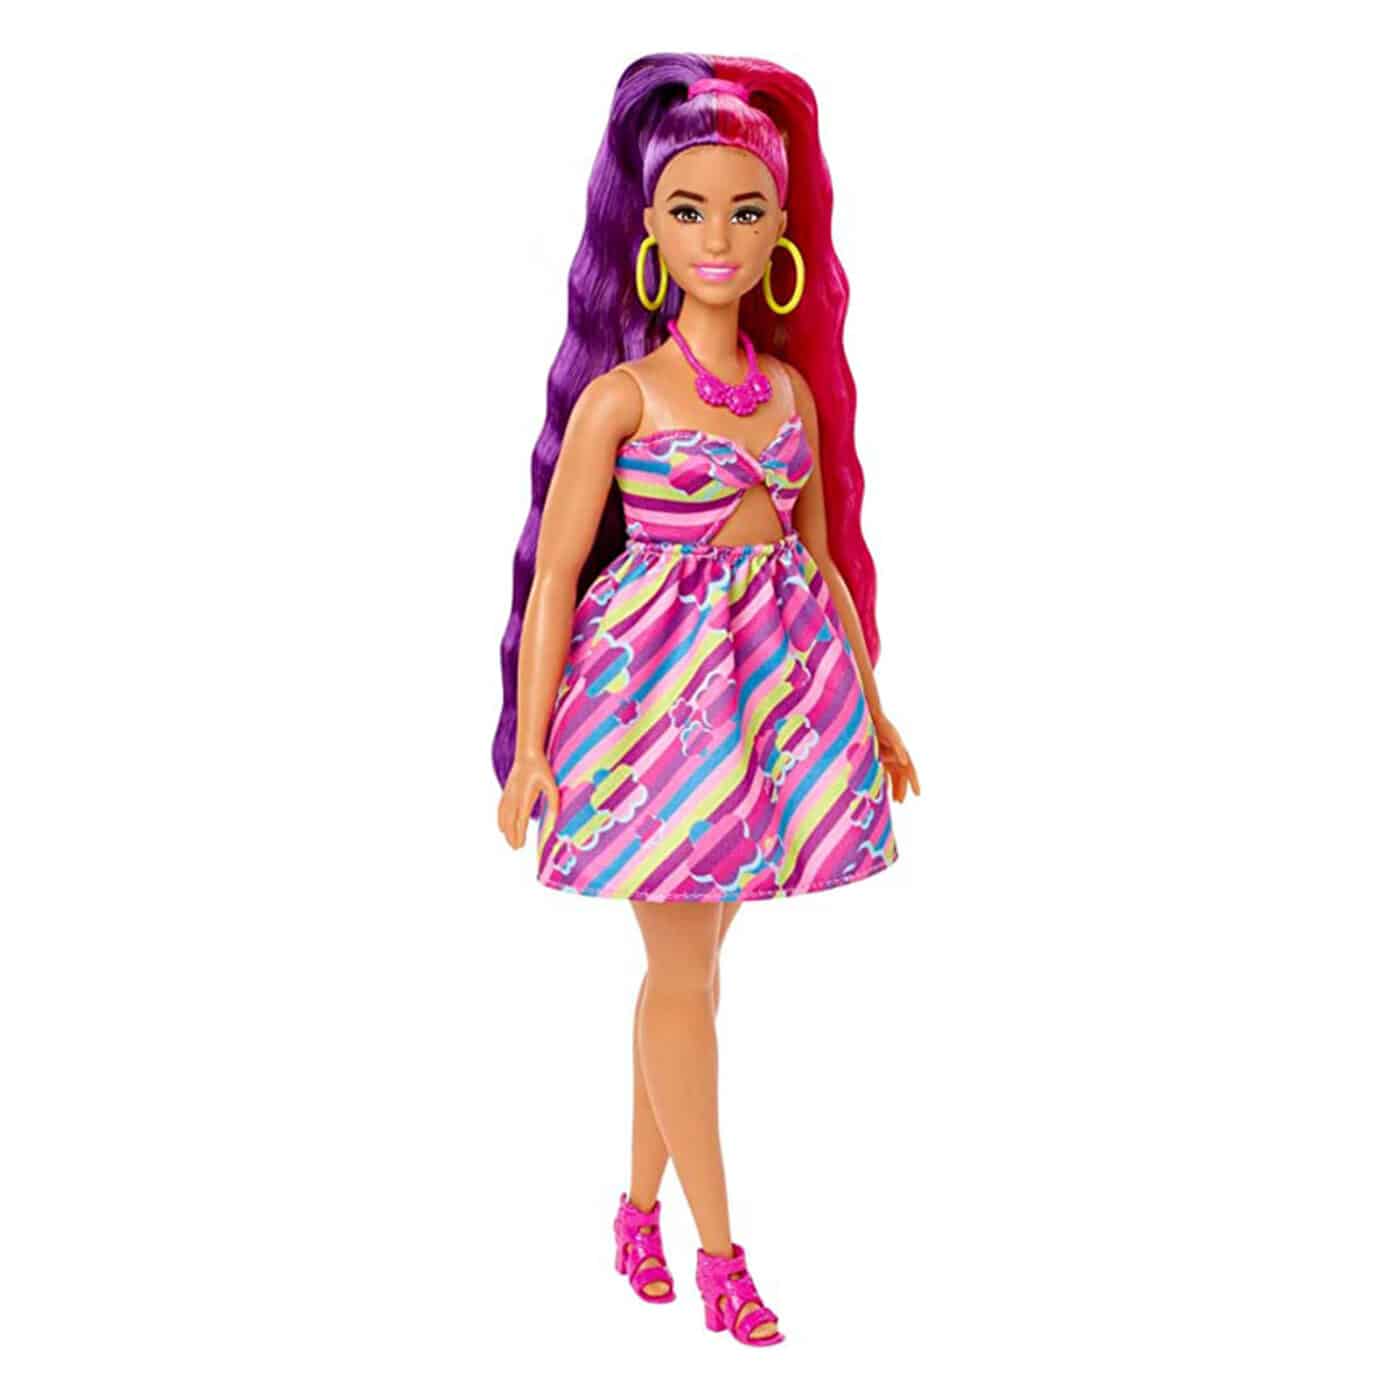 Barbie Totally Hair Flower-Themed Doll